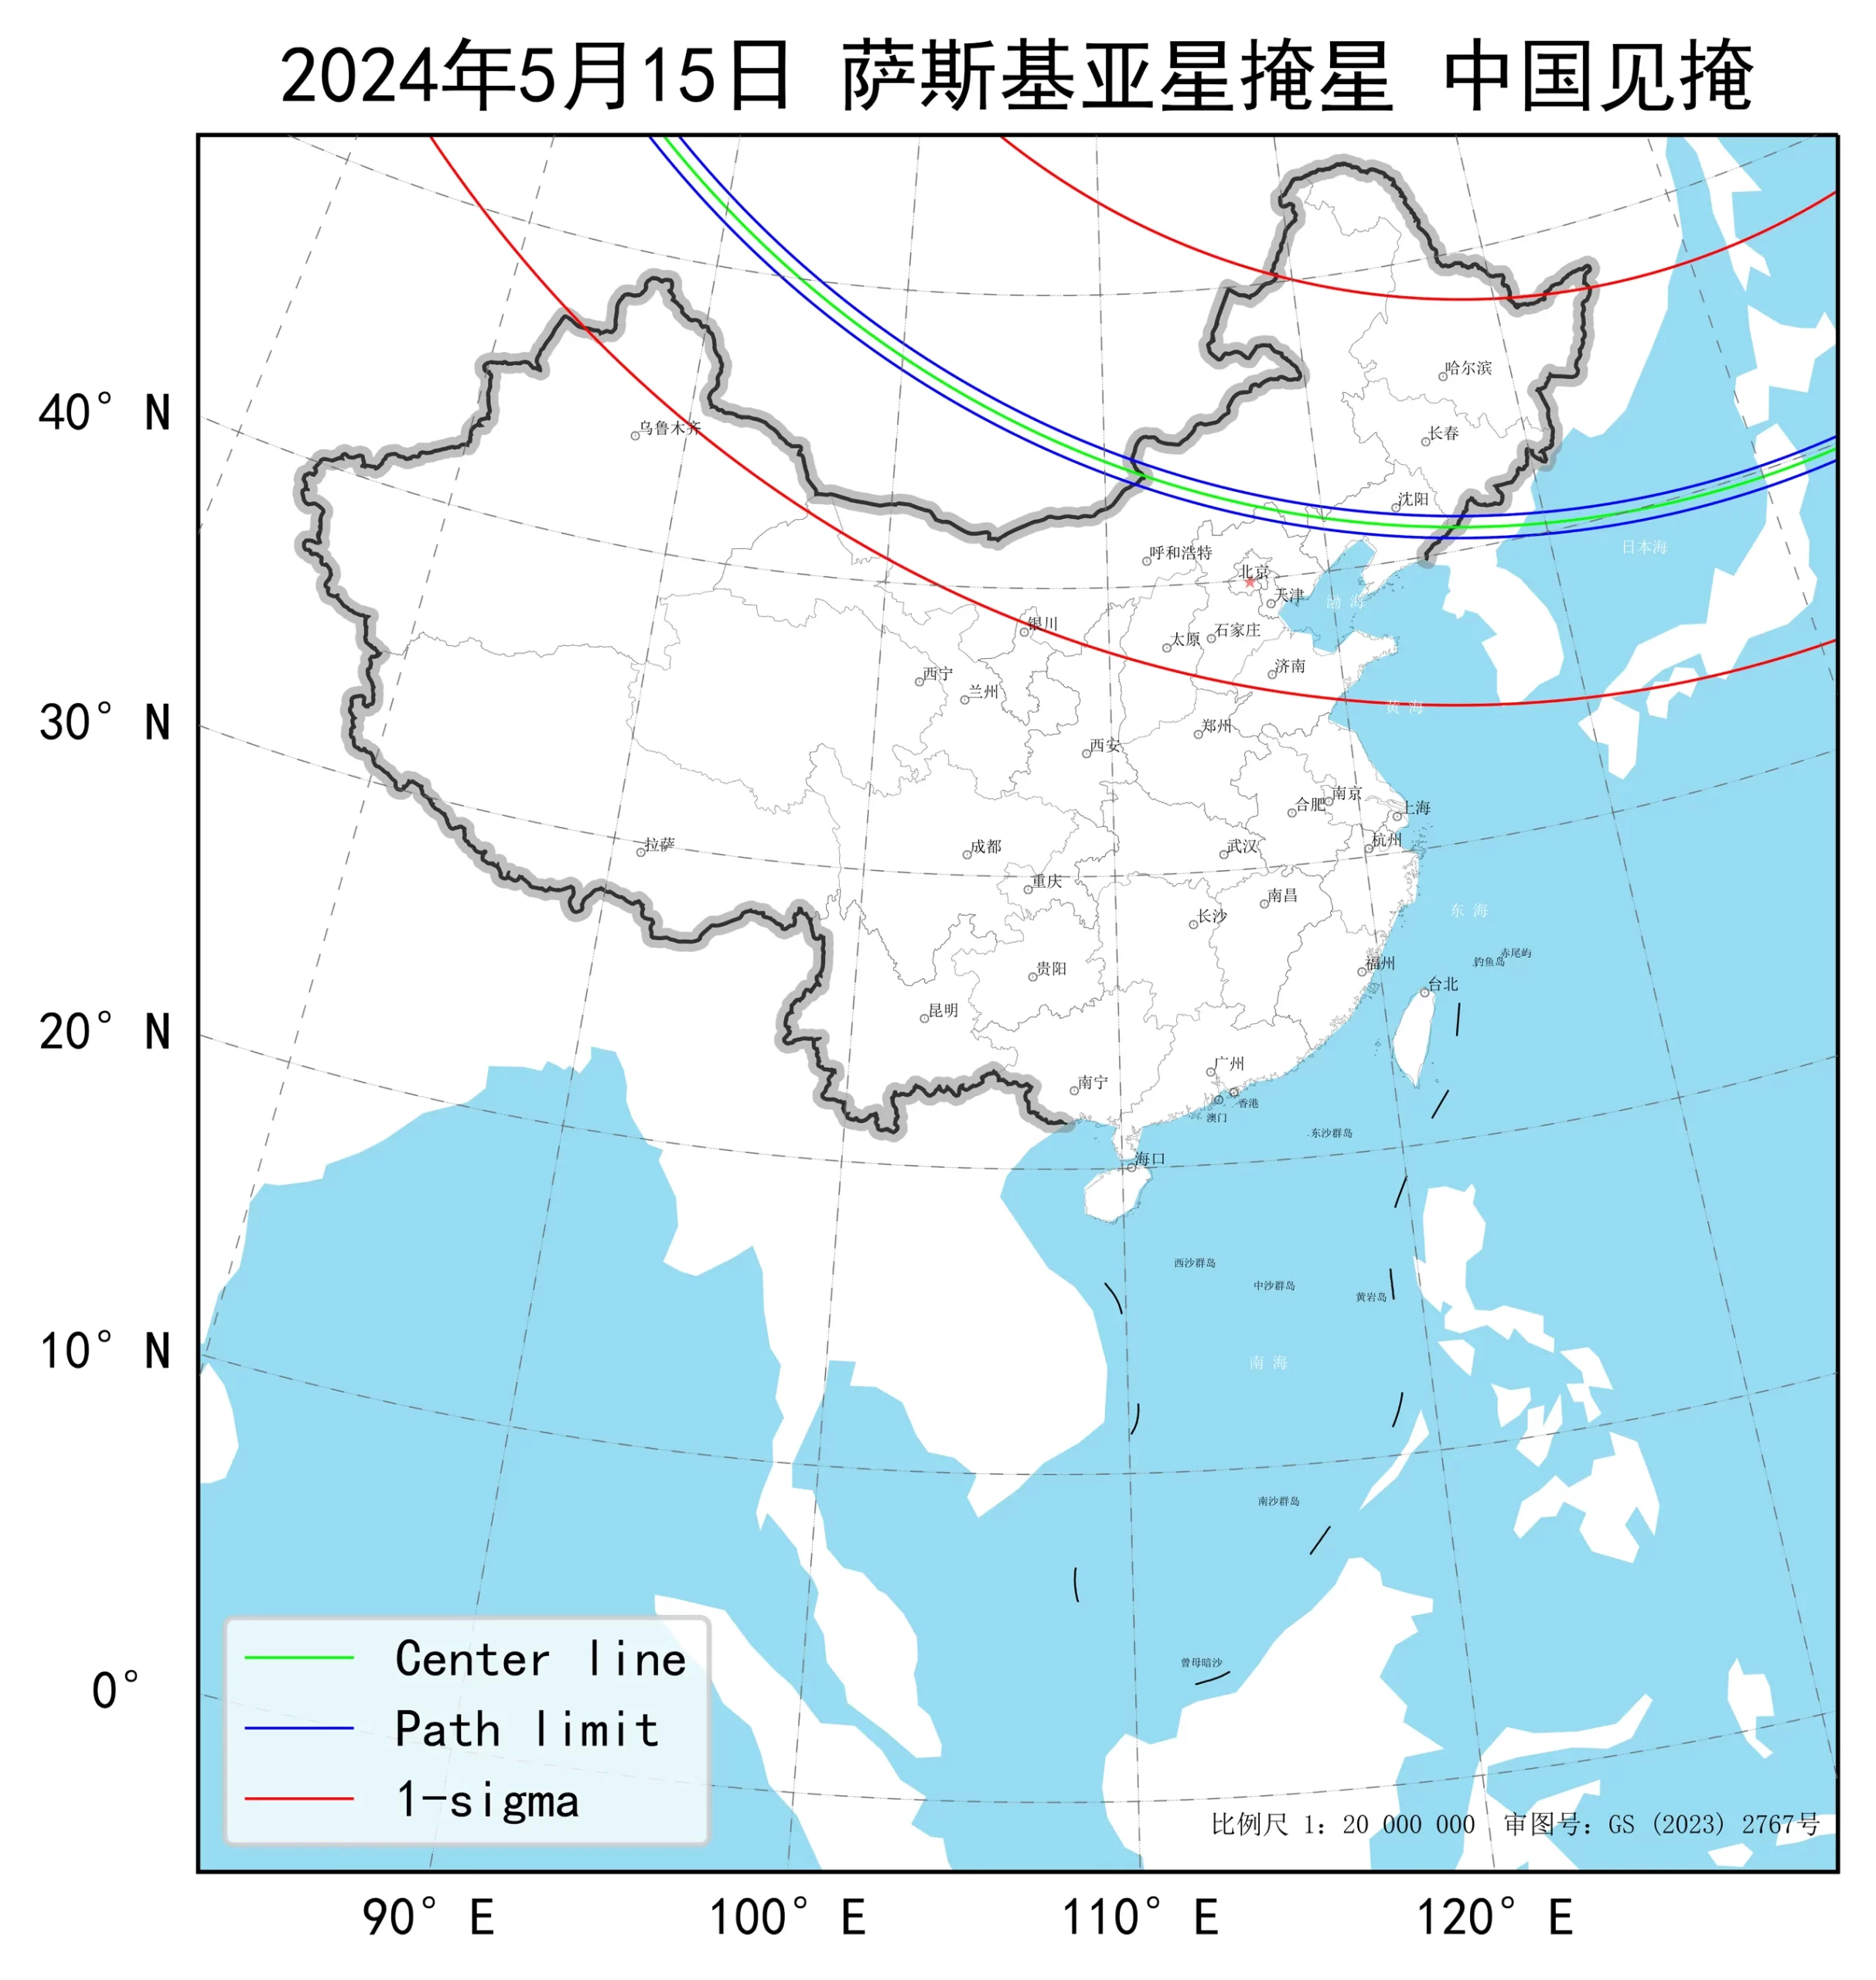 2024年5月15日小行星萨斯基亚星掩星中国见掩